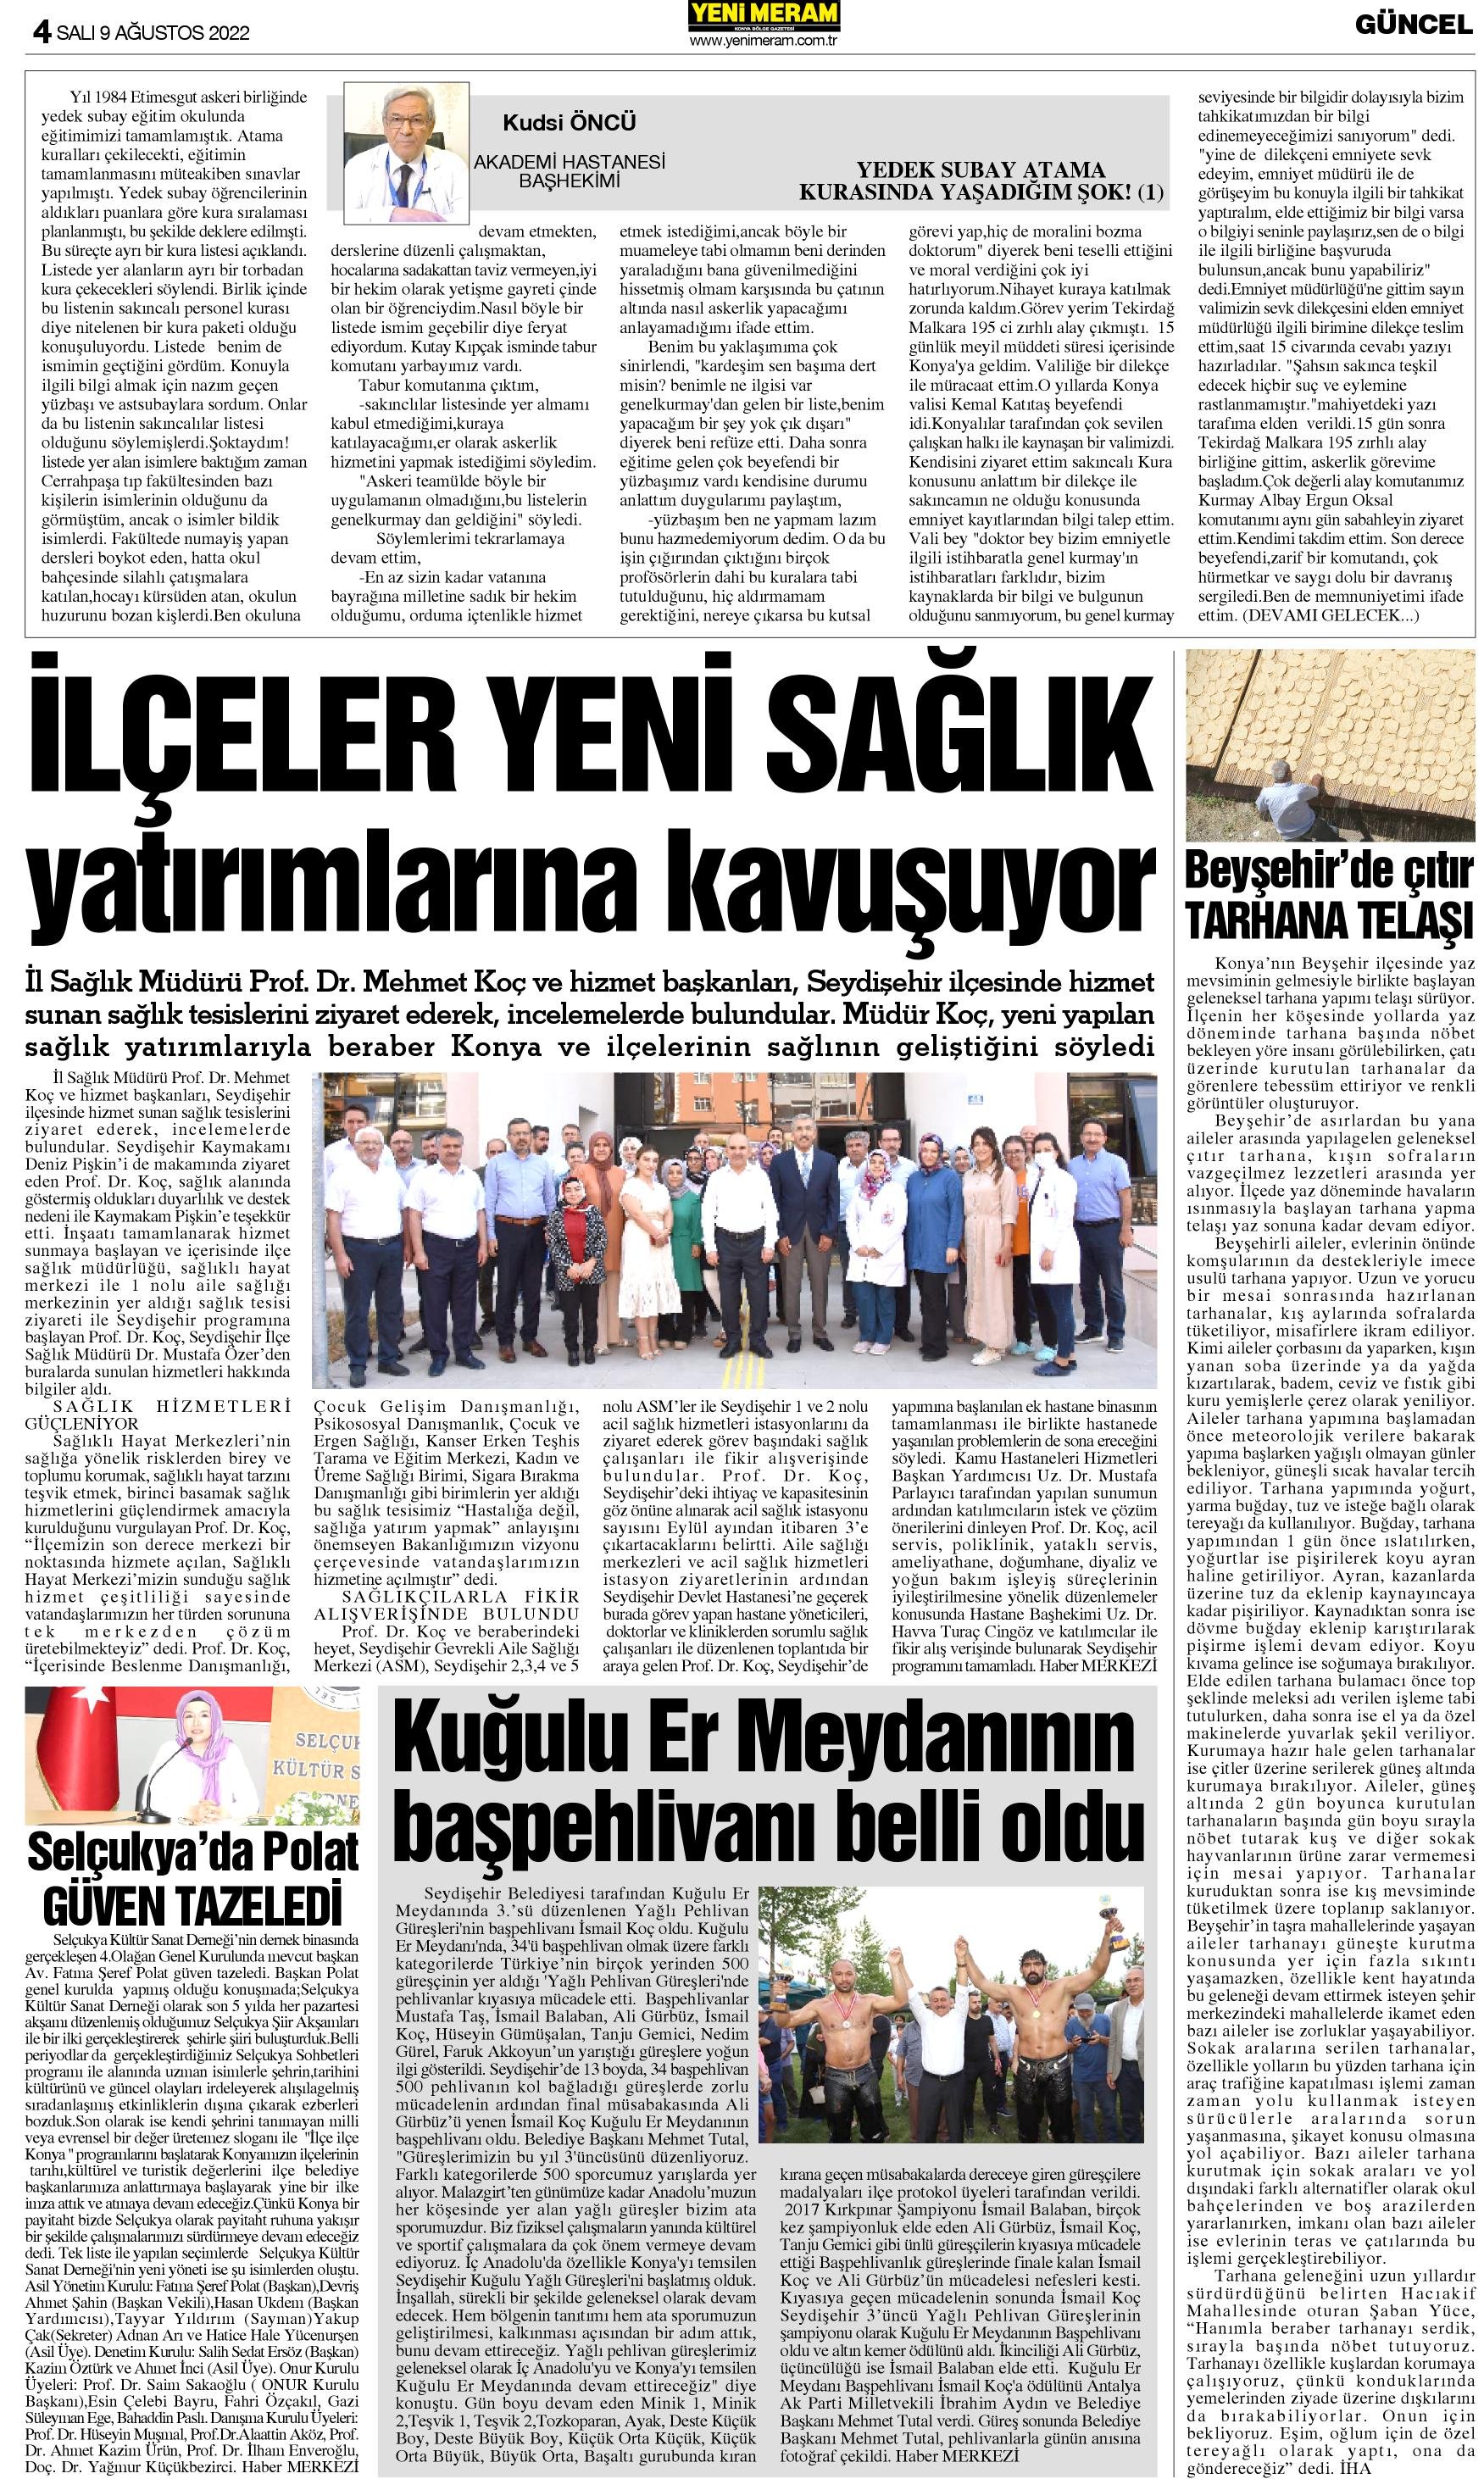 9 Ağustos 2022 Yeni Meram Gazetesi
